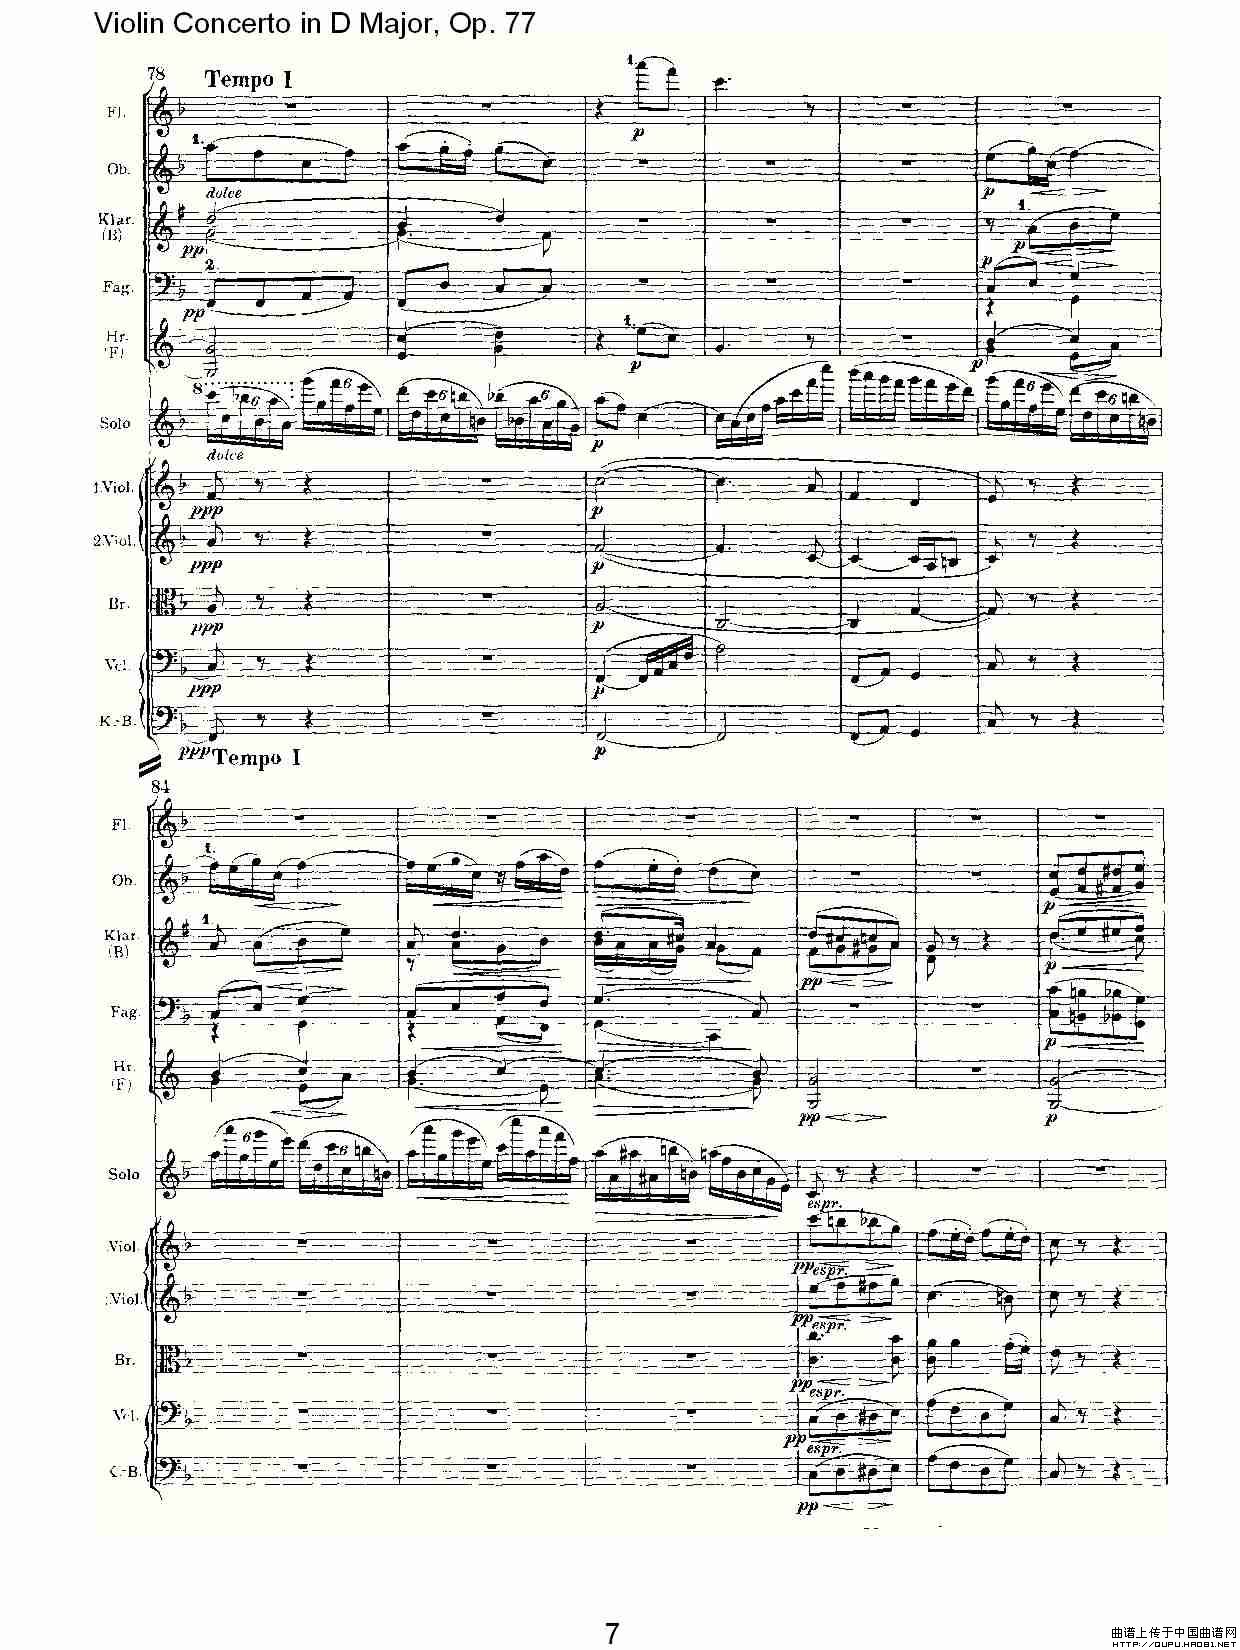 D大调小提琴协奏曲, Op.77第二乐章